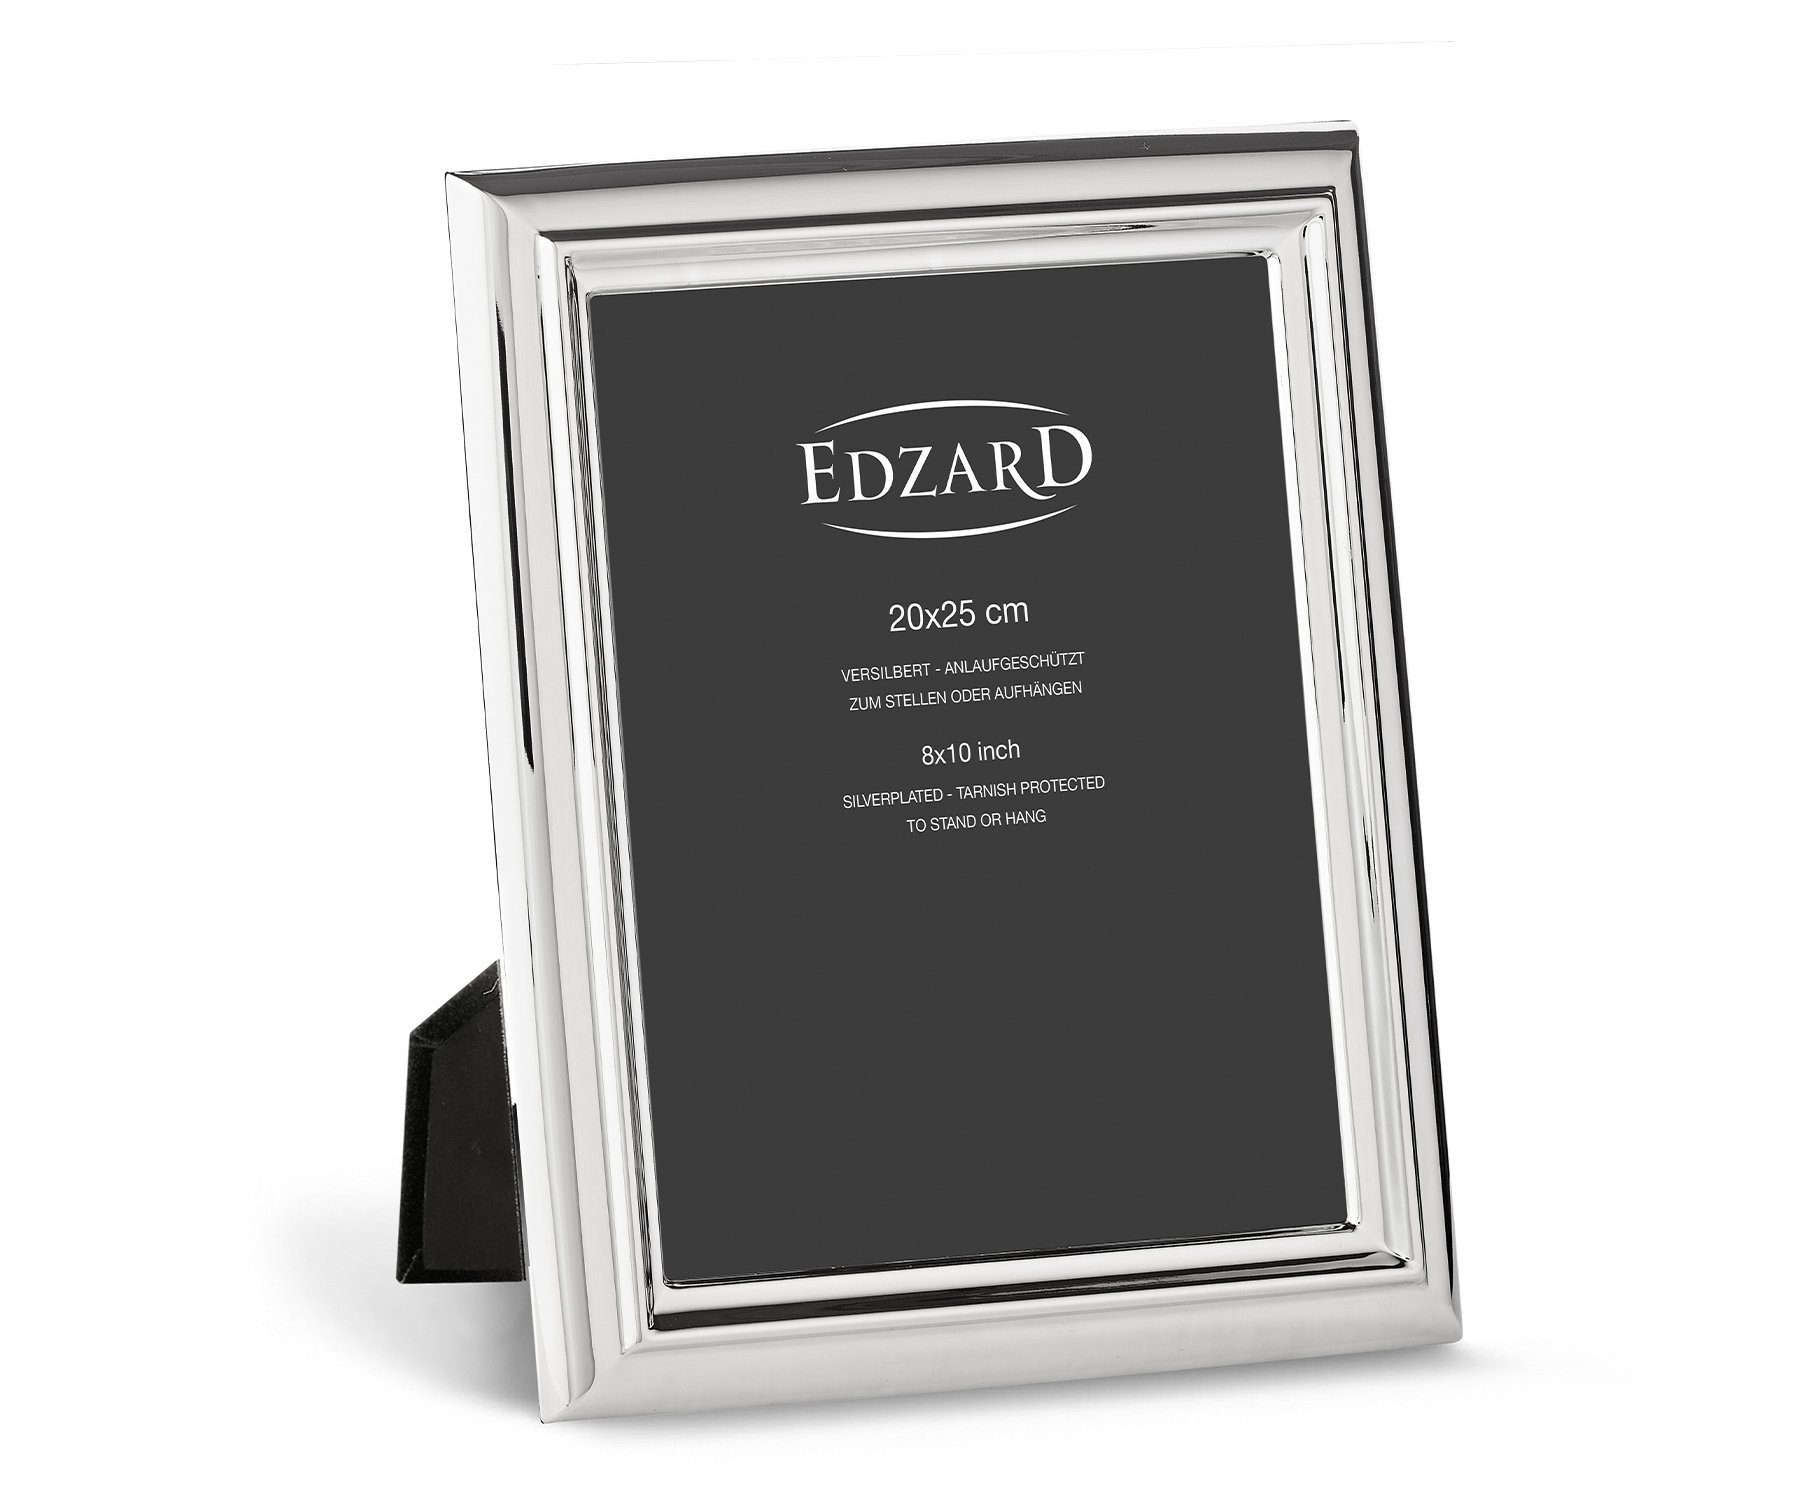 EDZARD Рамки Florenz, versilbert und anlaufgeschützt, für 20x25 cm Bilder – Fotorahmen